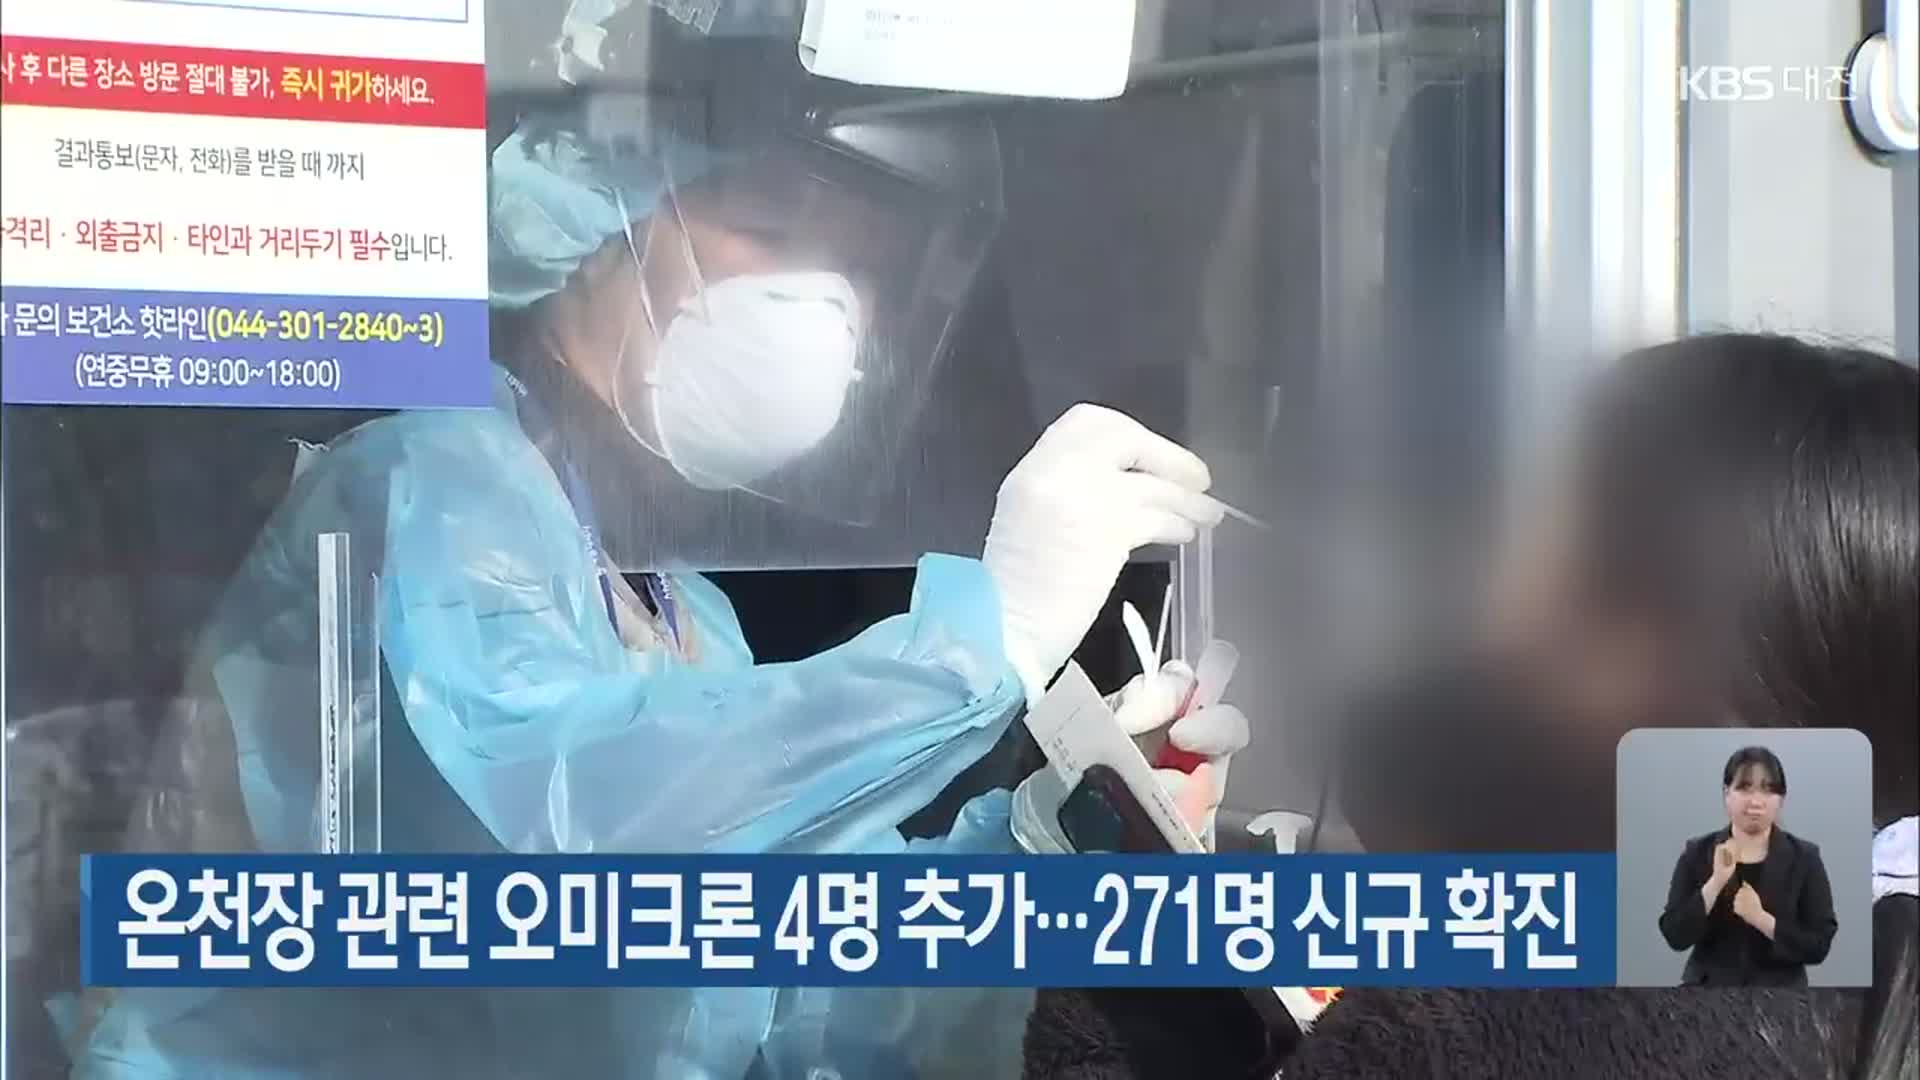 온천장 관련 오미크론 4명 추가…대전·세종·충남 271명 신규 확진